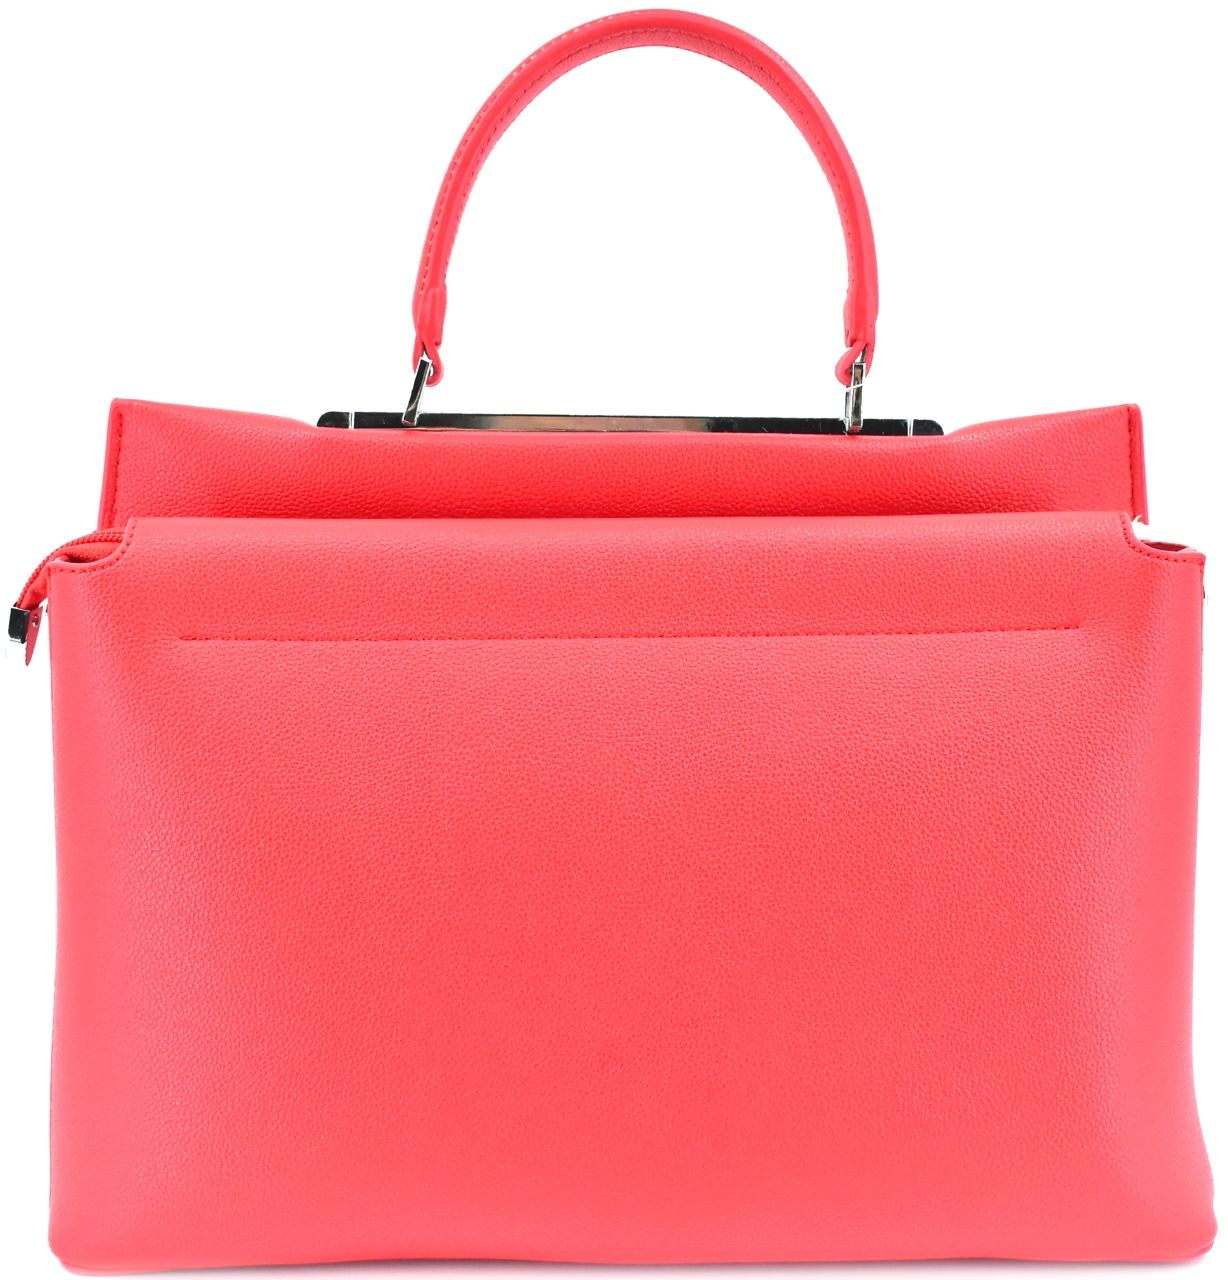 Moderní dámská kabelka shopper - červená 41377